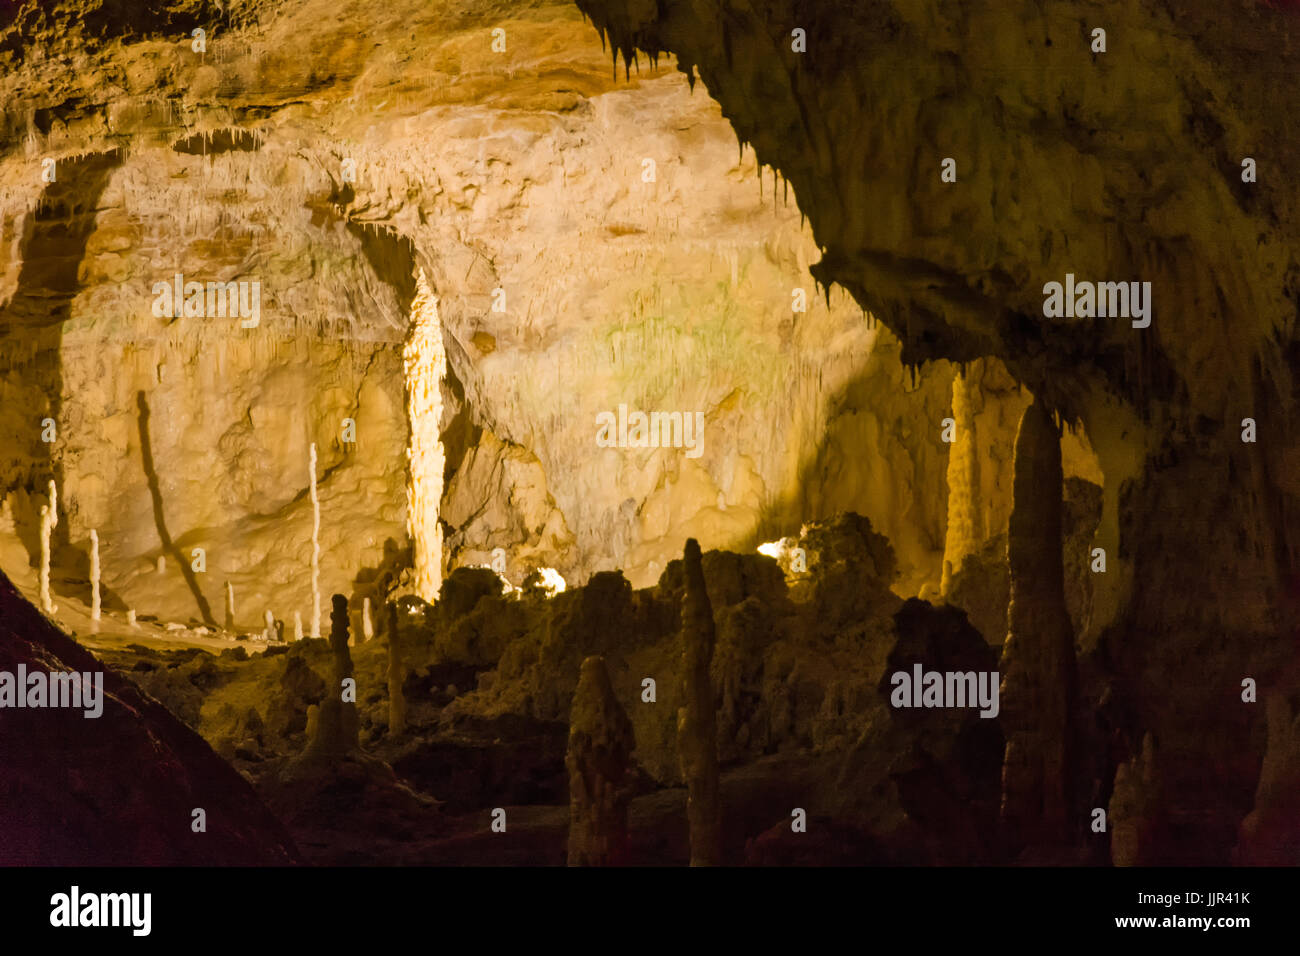 Grottes de Frasassi, Italie, Ancône, Région des Marches. La formation de stalagmites et stalactites dans les grottes de Frasassi. Banque D'Images